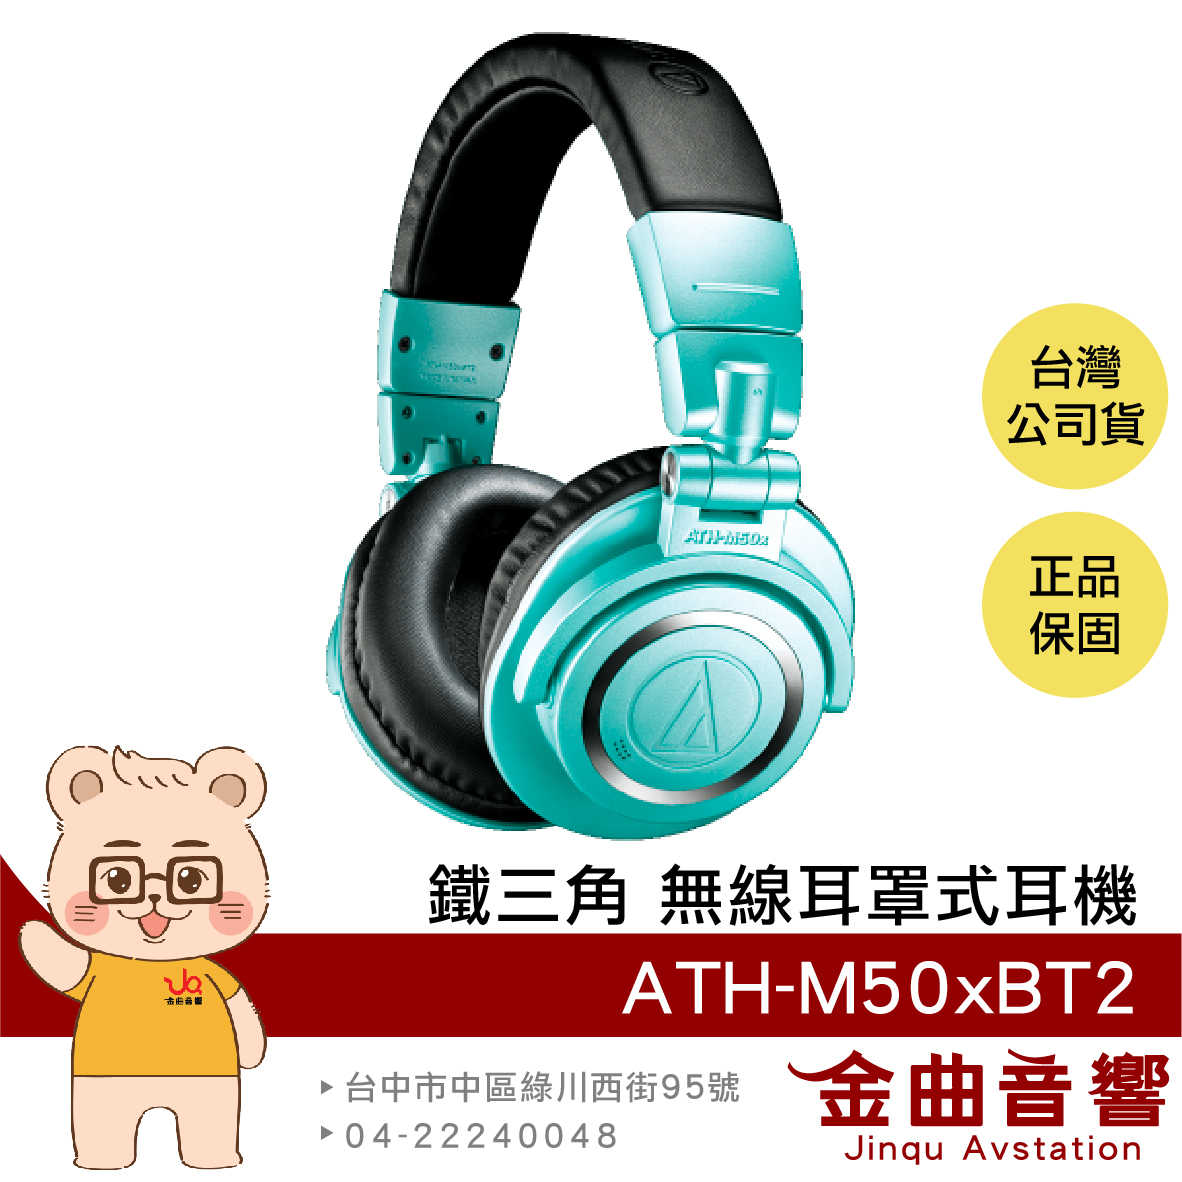 【預購7月】鐵三角 ATH-M50xBT2 冰藍色 IB 藍芽 耳罩式 耳機 無線 低延遲 | 金曲音響